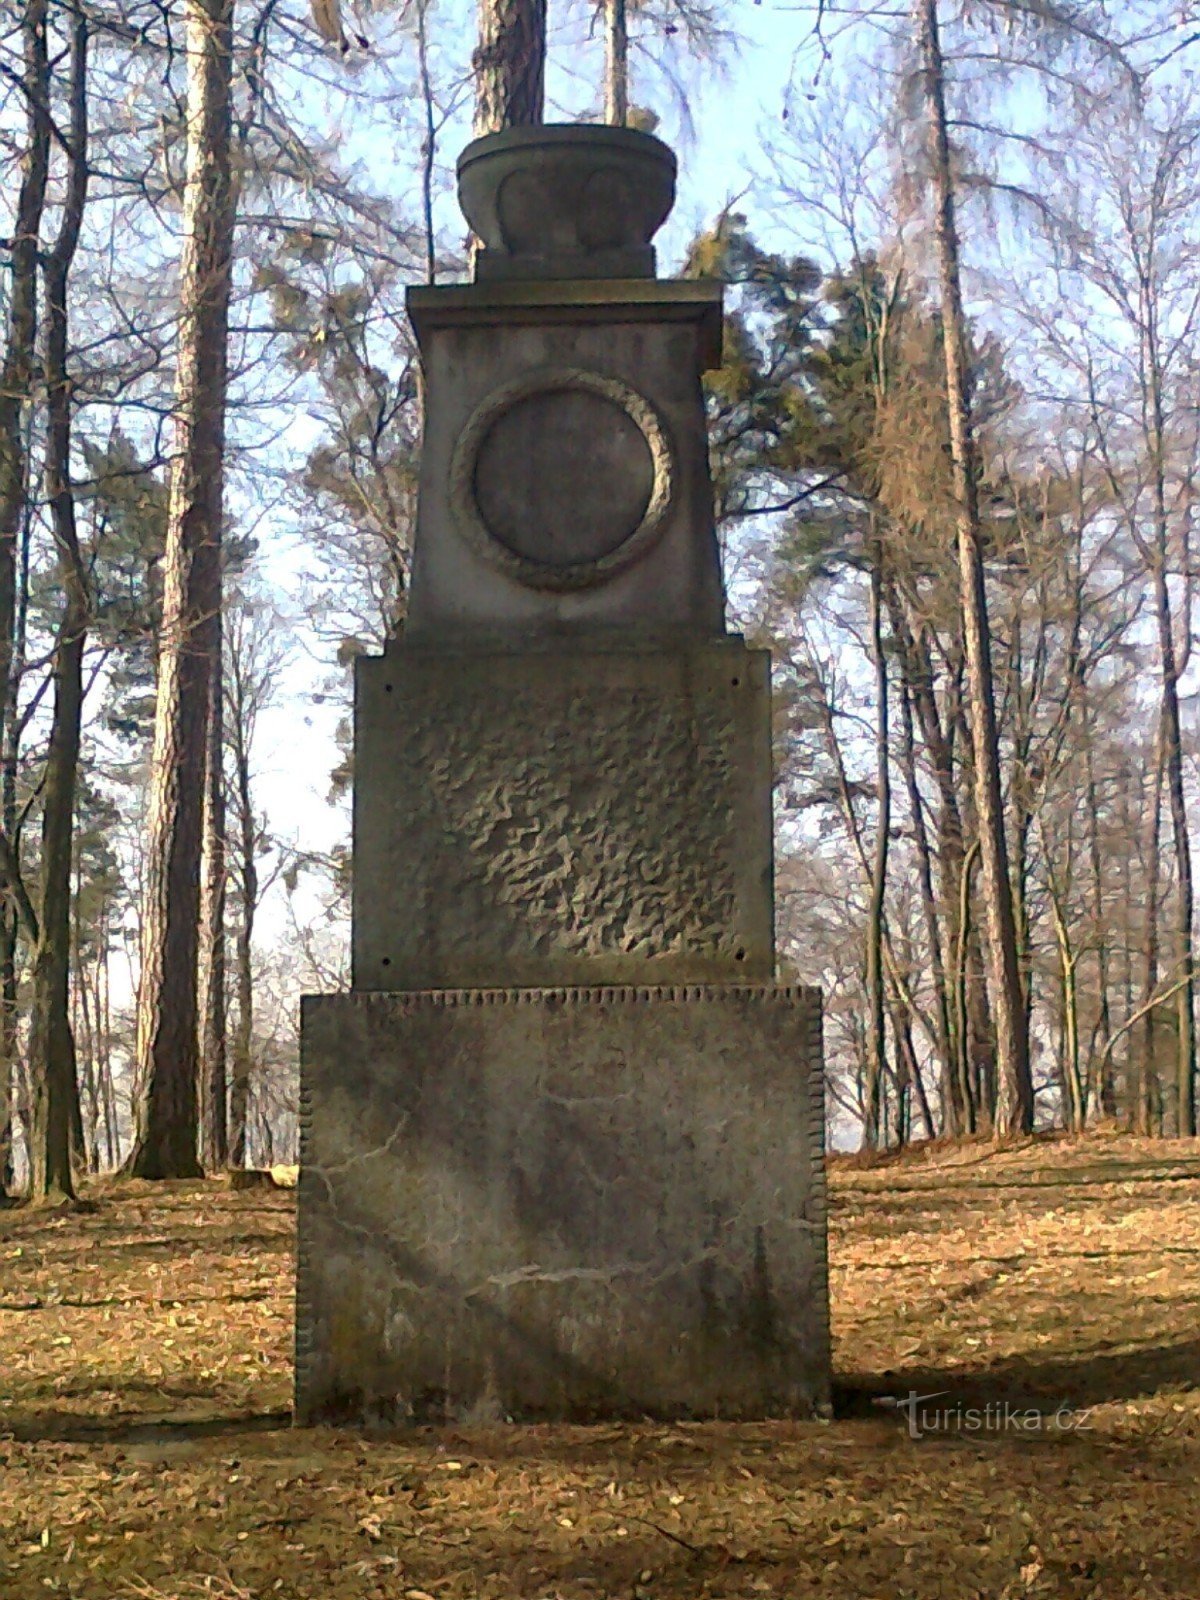 Het monument voor degenen die zijn omgekomen in de Eerste Wereldoorlog gebouwd op de zogenaamde Křížová hora